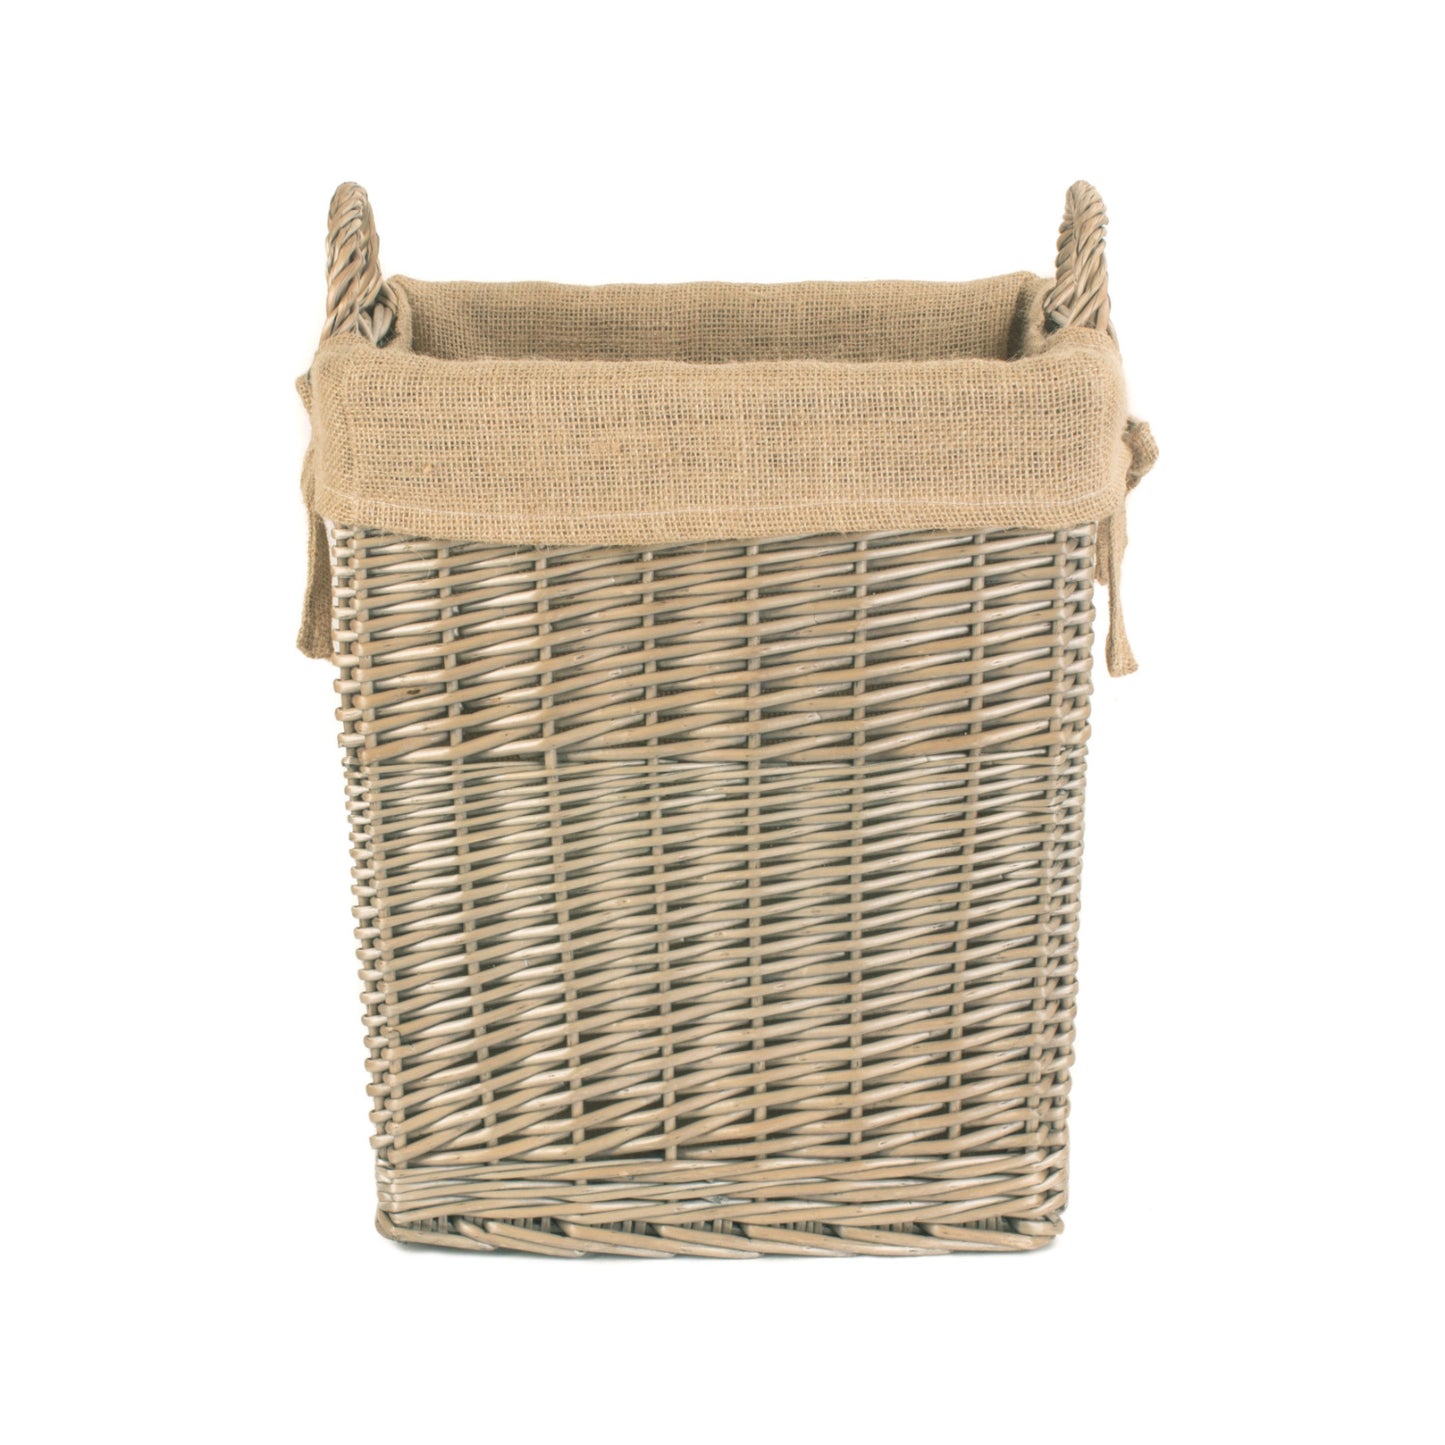 Small Rectangular Log / Storage Basket